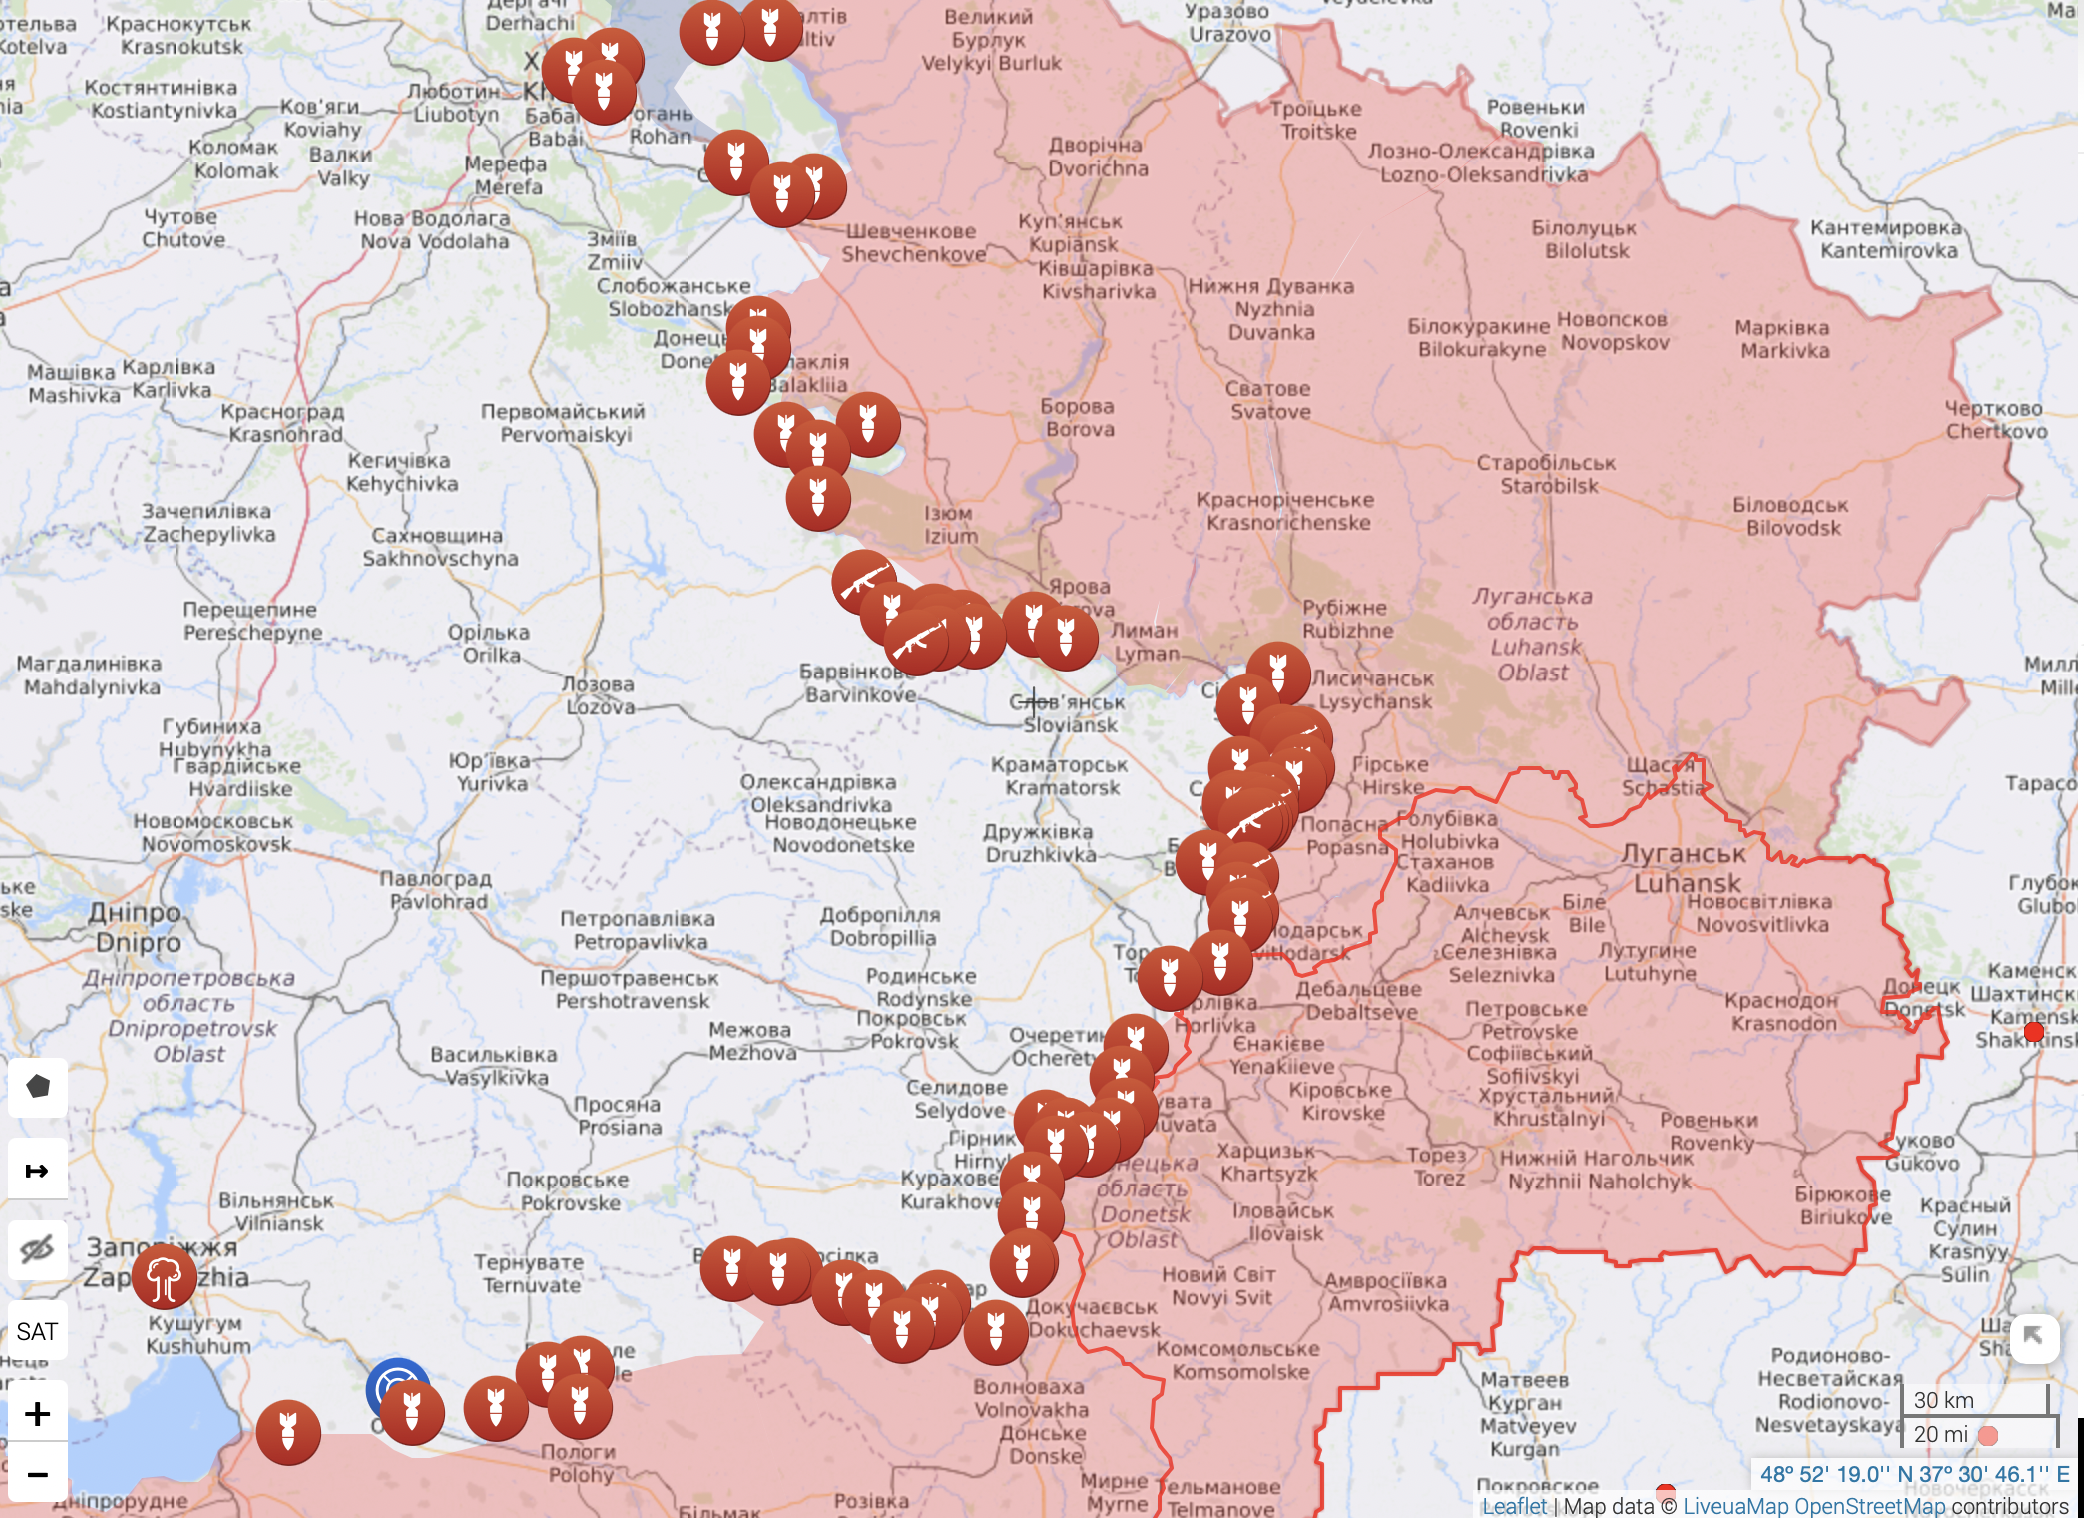 Карта війни в Україні на 19 серпня: де ведуться бойові дії